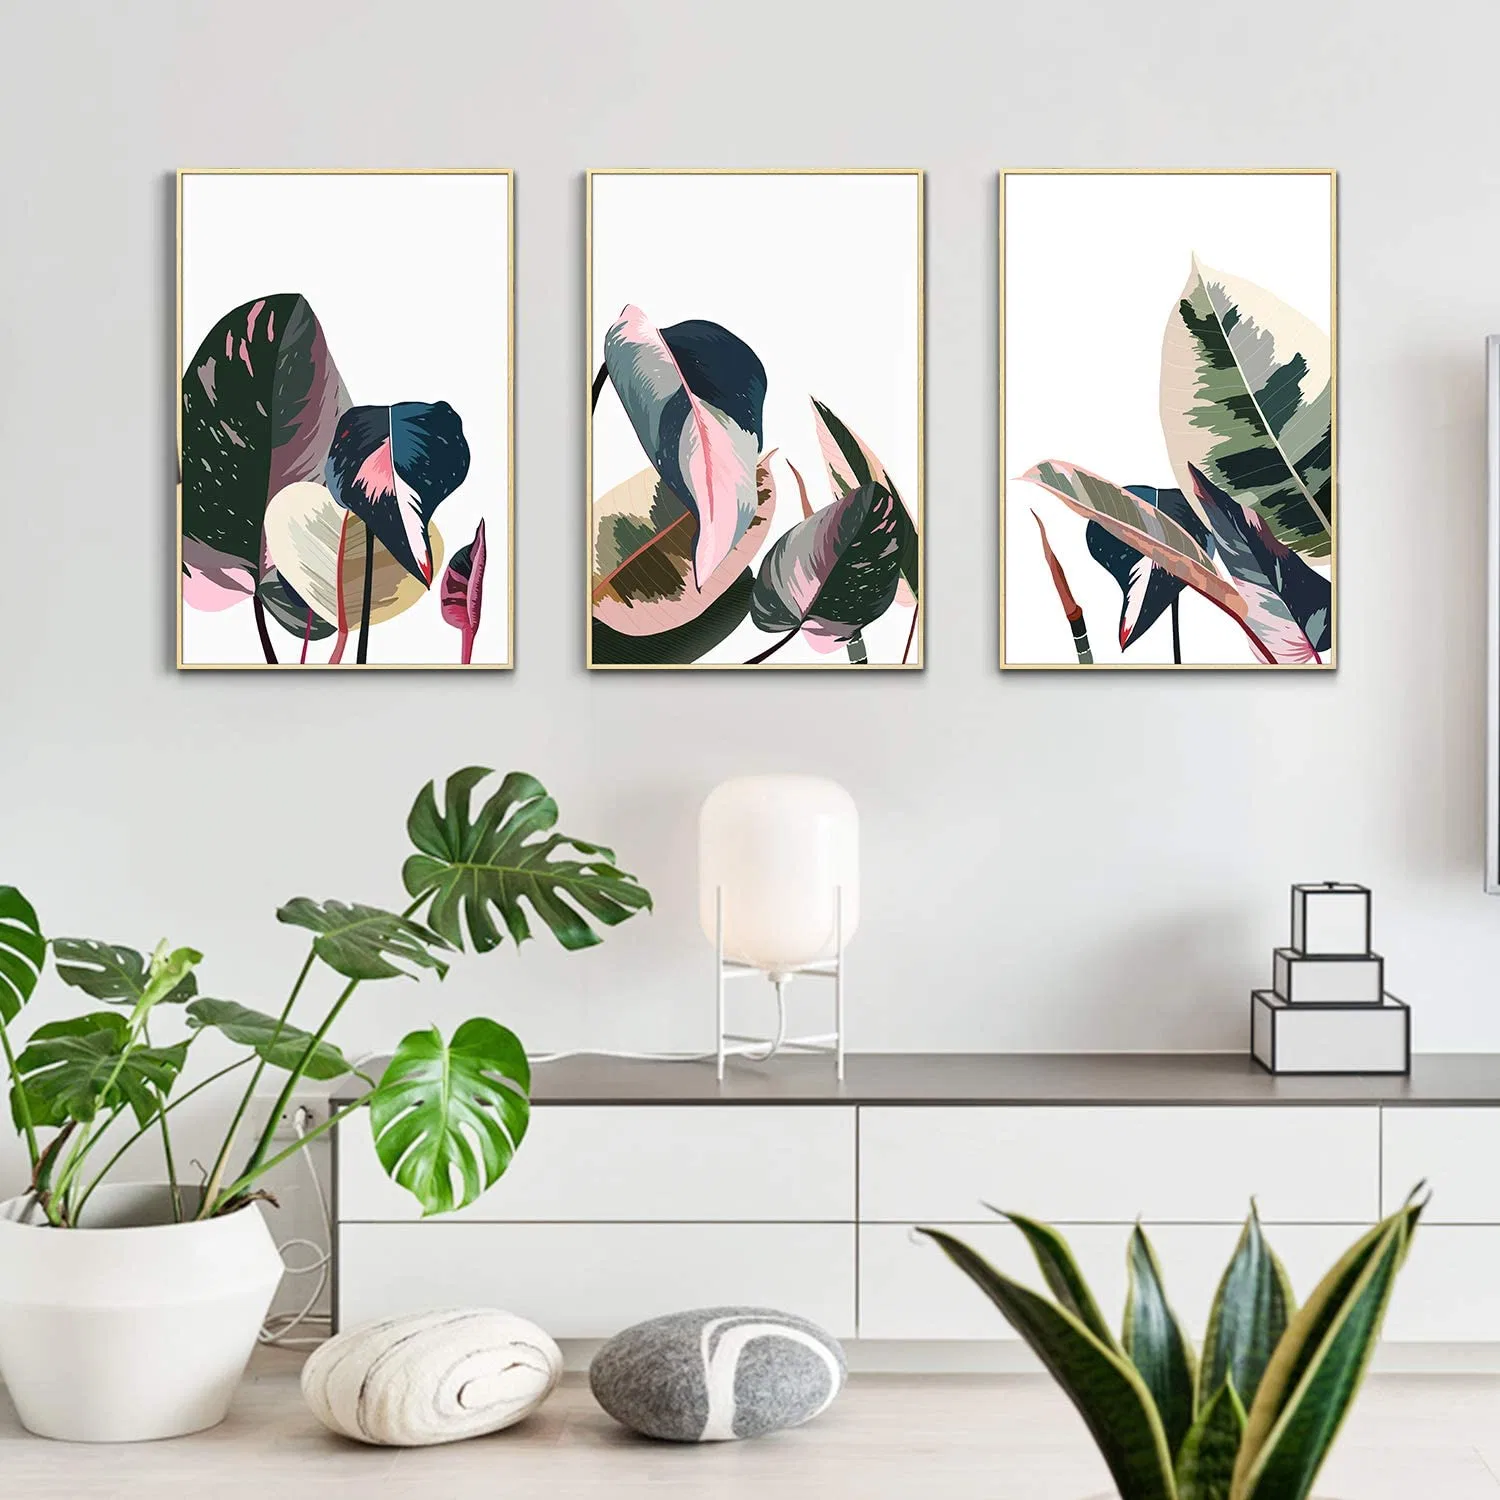 نبات مجرّد يترك صورة حائط ملصق نمط عصري قماش غرفة معيشة فنية زيتية بأسلوب جناح وديكور فريد